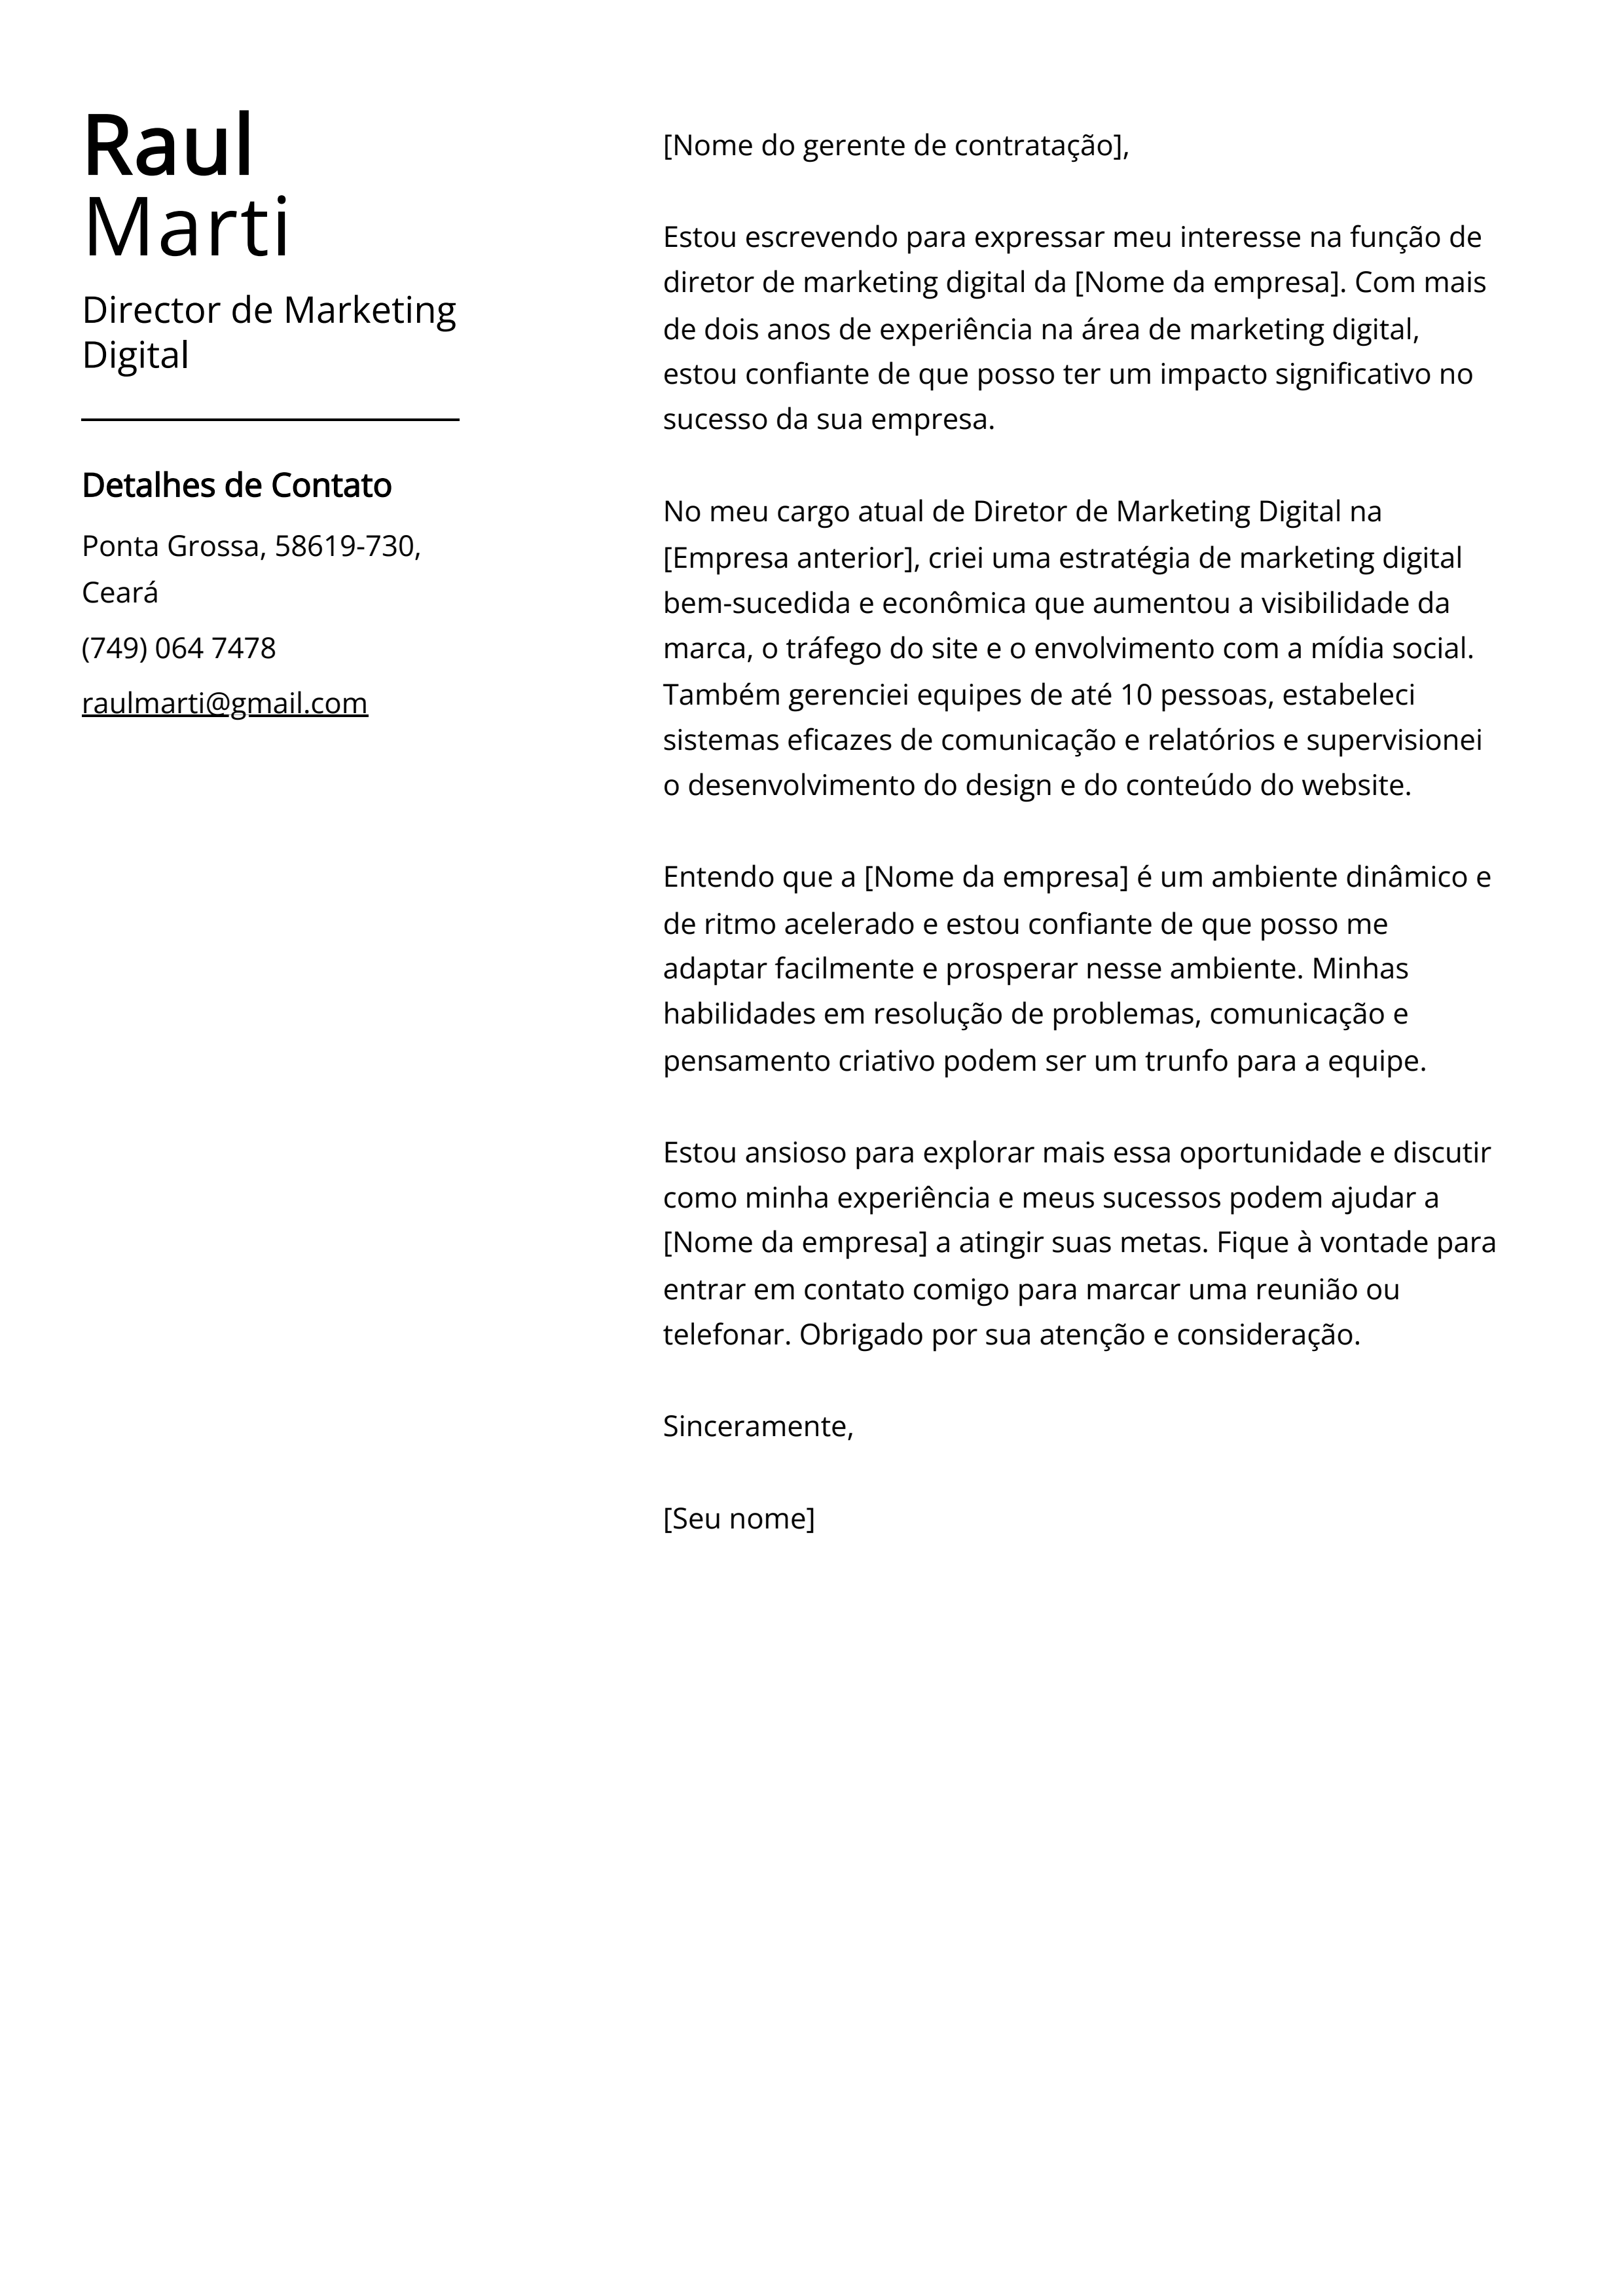 Exemplo de carta de apresentação do diretor de marketing digital